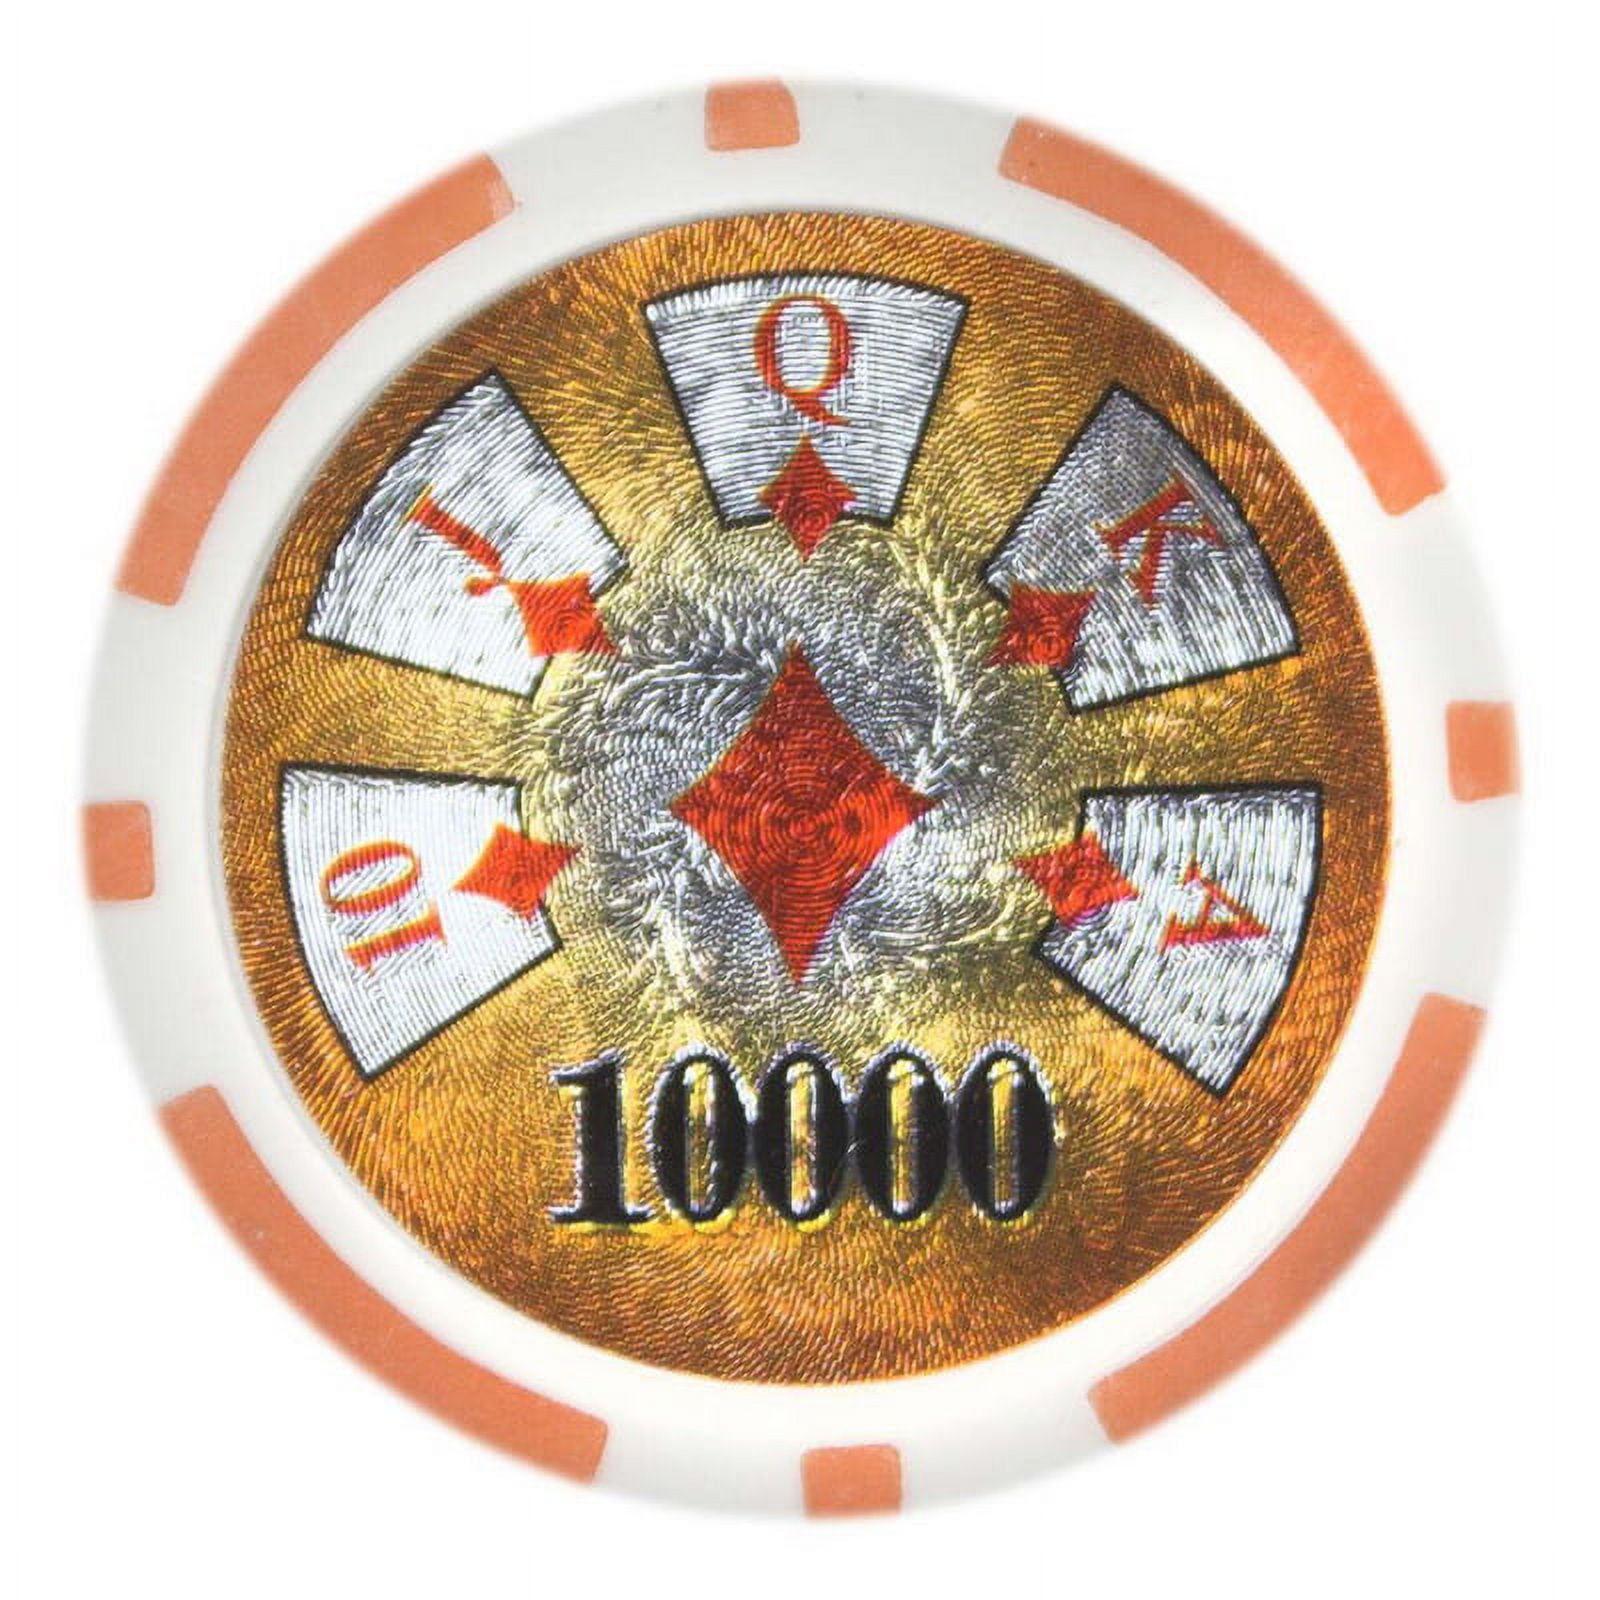 Cphr-10000-25 Hi Roller - Dollar 10000, Roll Of 25 - 14 G